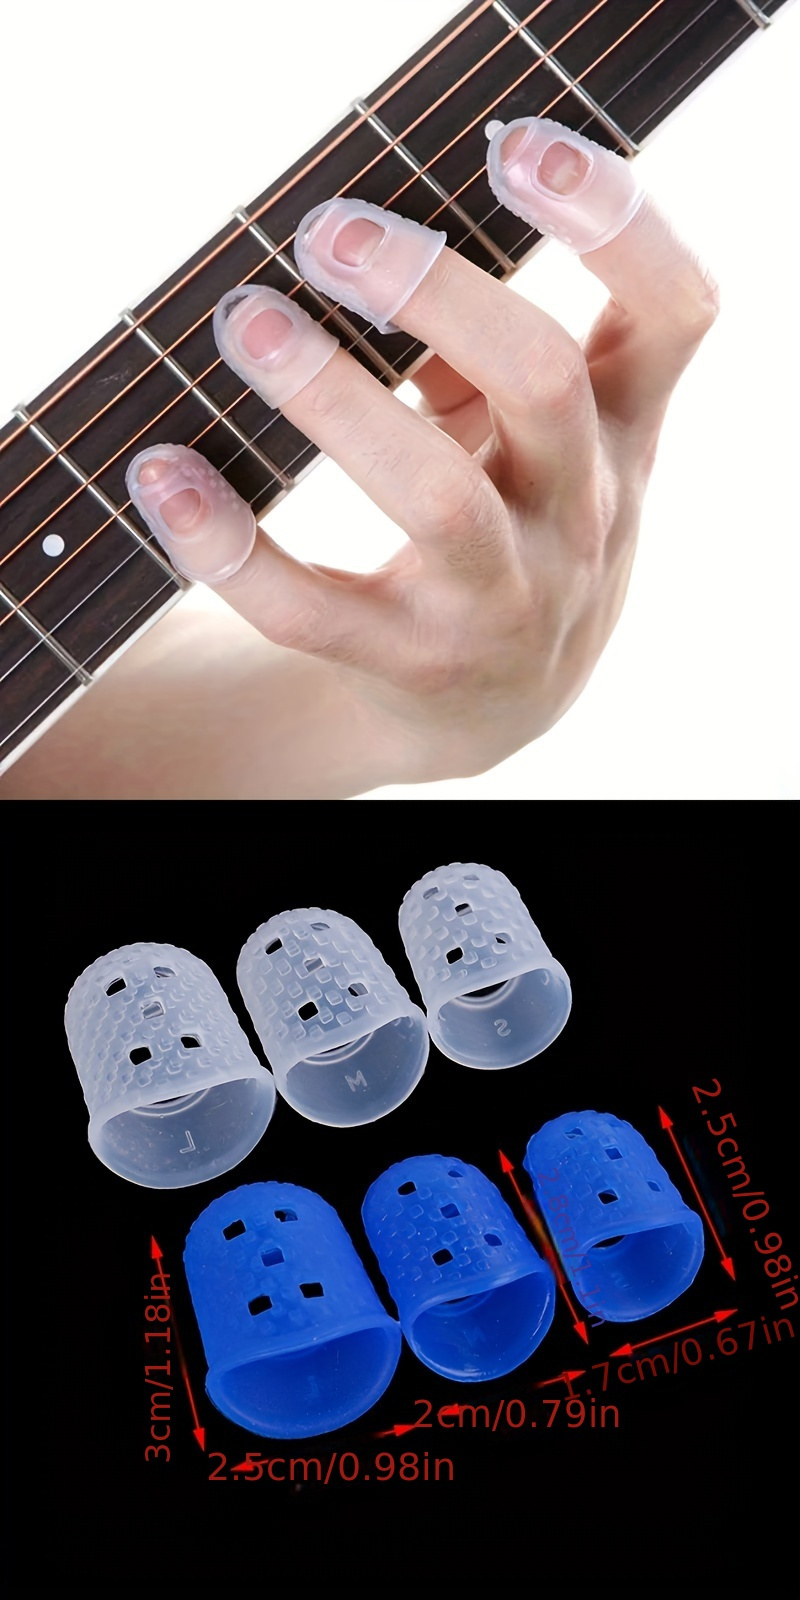 Protège-doigts de guitare en silicone, bout des doigts de guitare